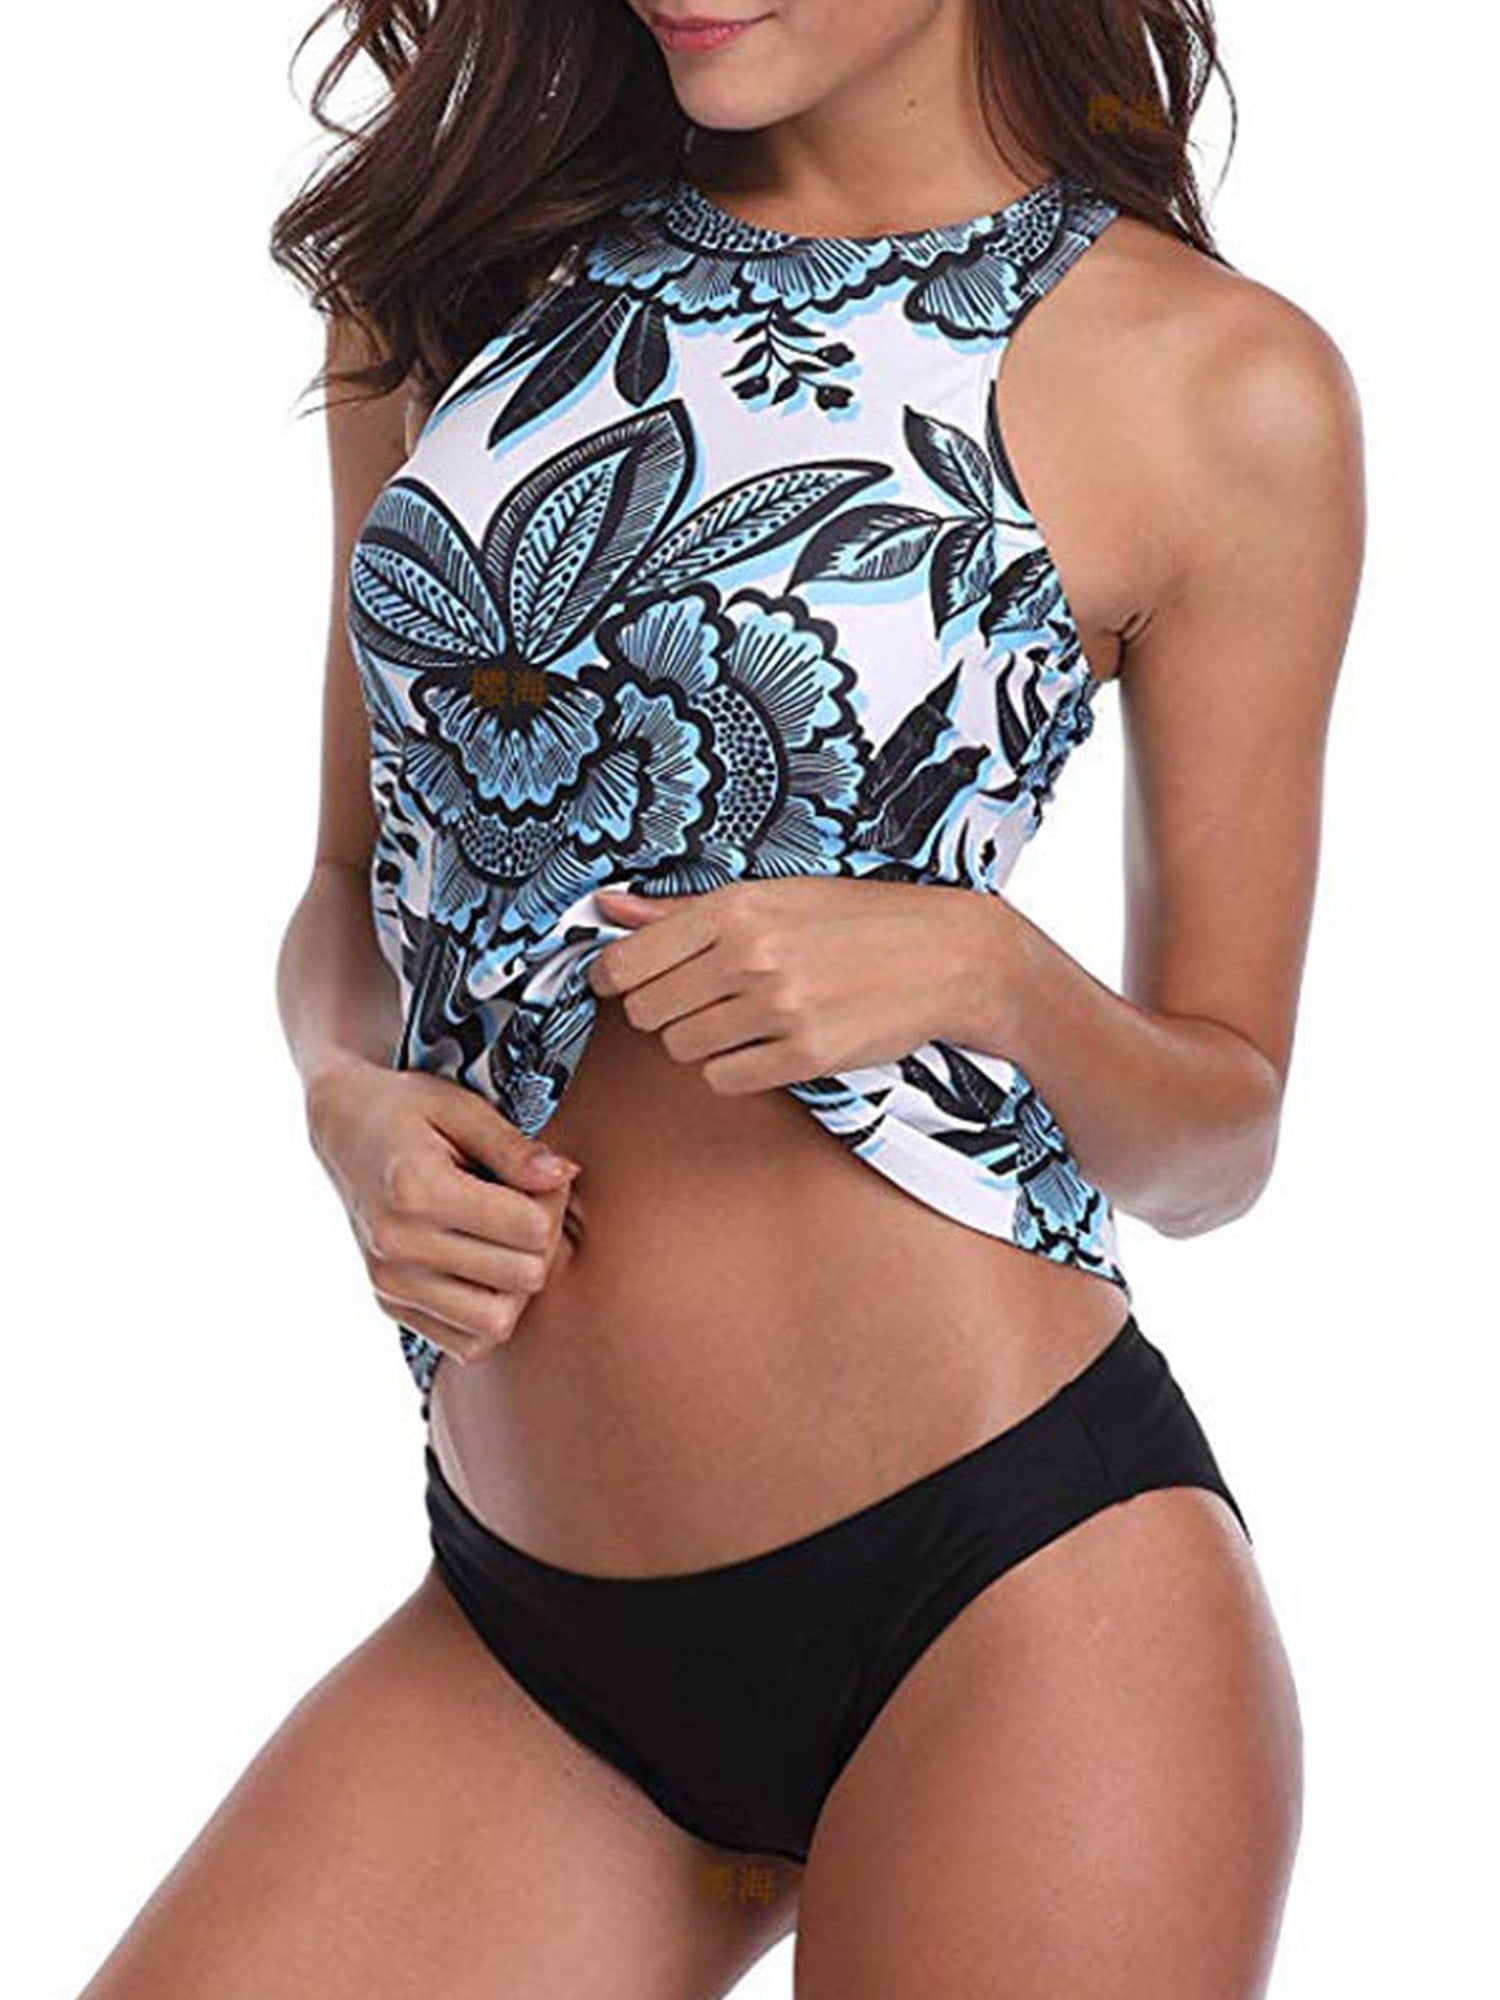 Zando Halter Bikini Set with Boyshort Push Up 2 Piece Swimsuit Bathing Suit for Women MNFUXA1S1754G0000 